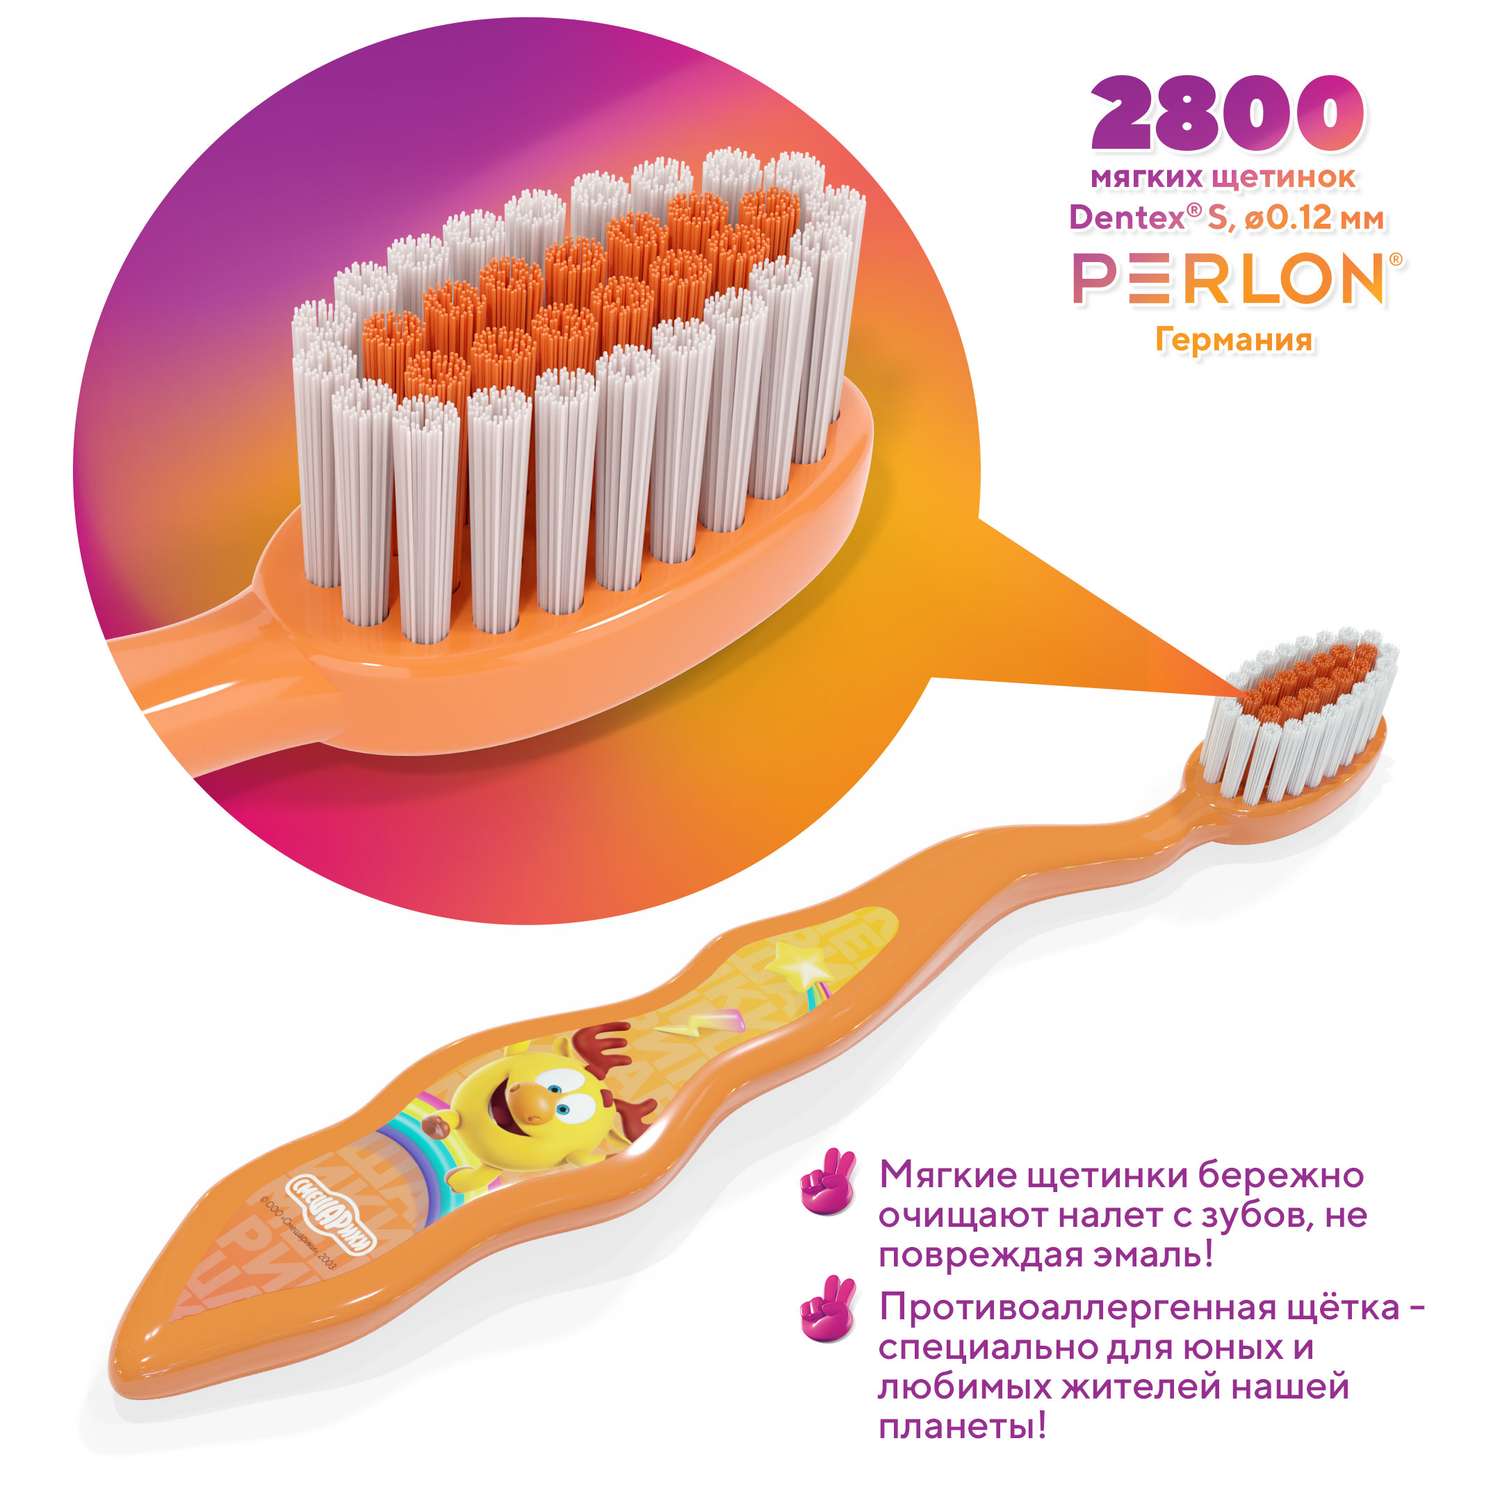 Зубная щётка для детей Multifab Смешарики Лосяш оранжевый - фото 2